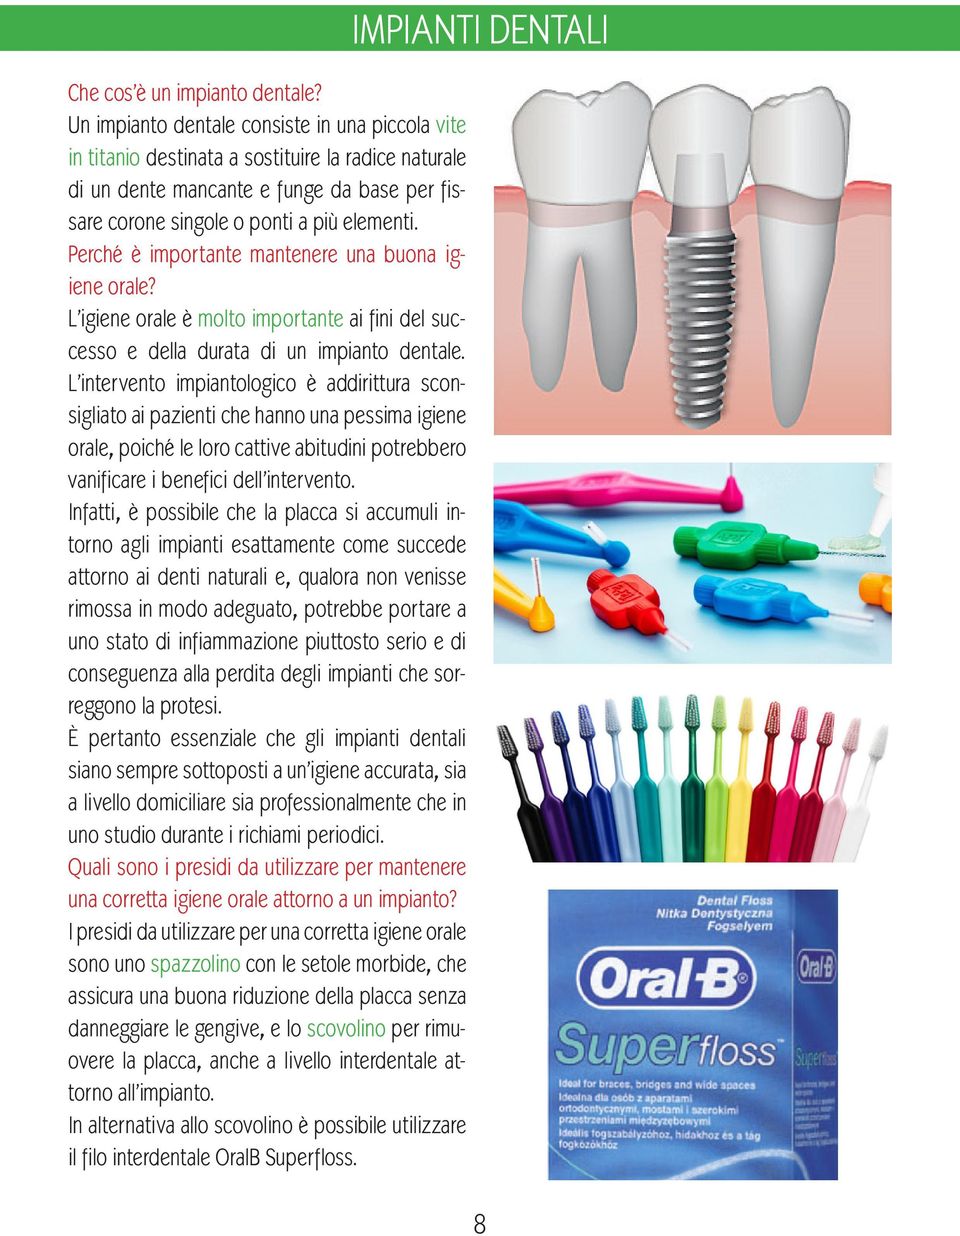 Perché è importante mantenere una buona igiene orale? L igiene orale è molto importante ai fini del successo e della durata di un impianto dentale.